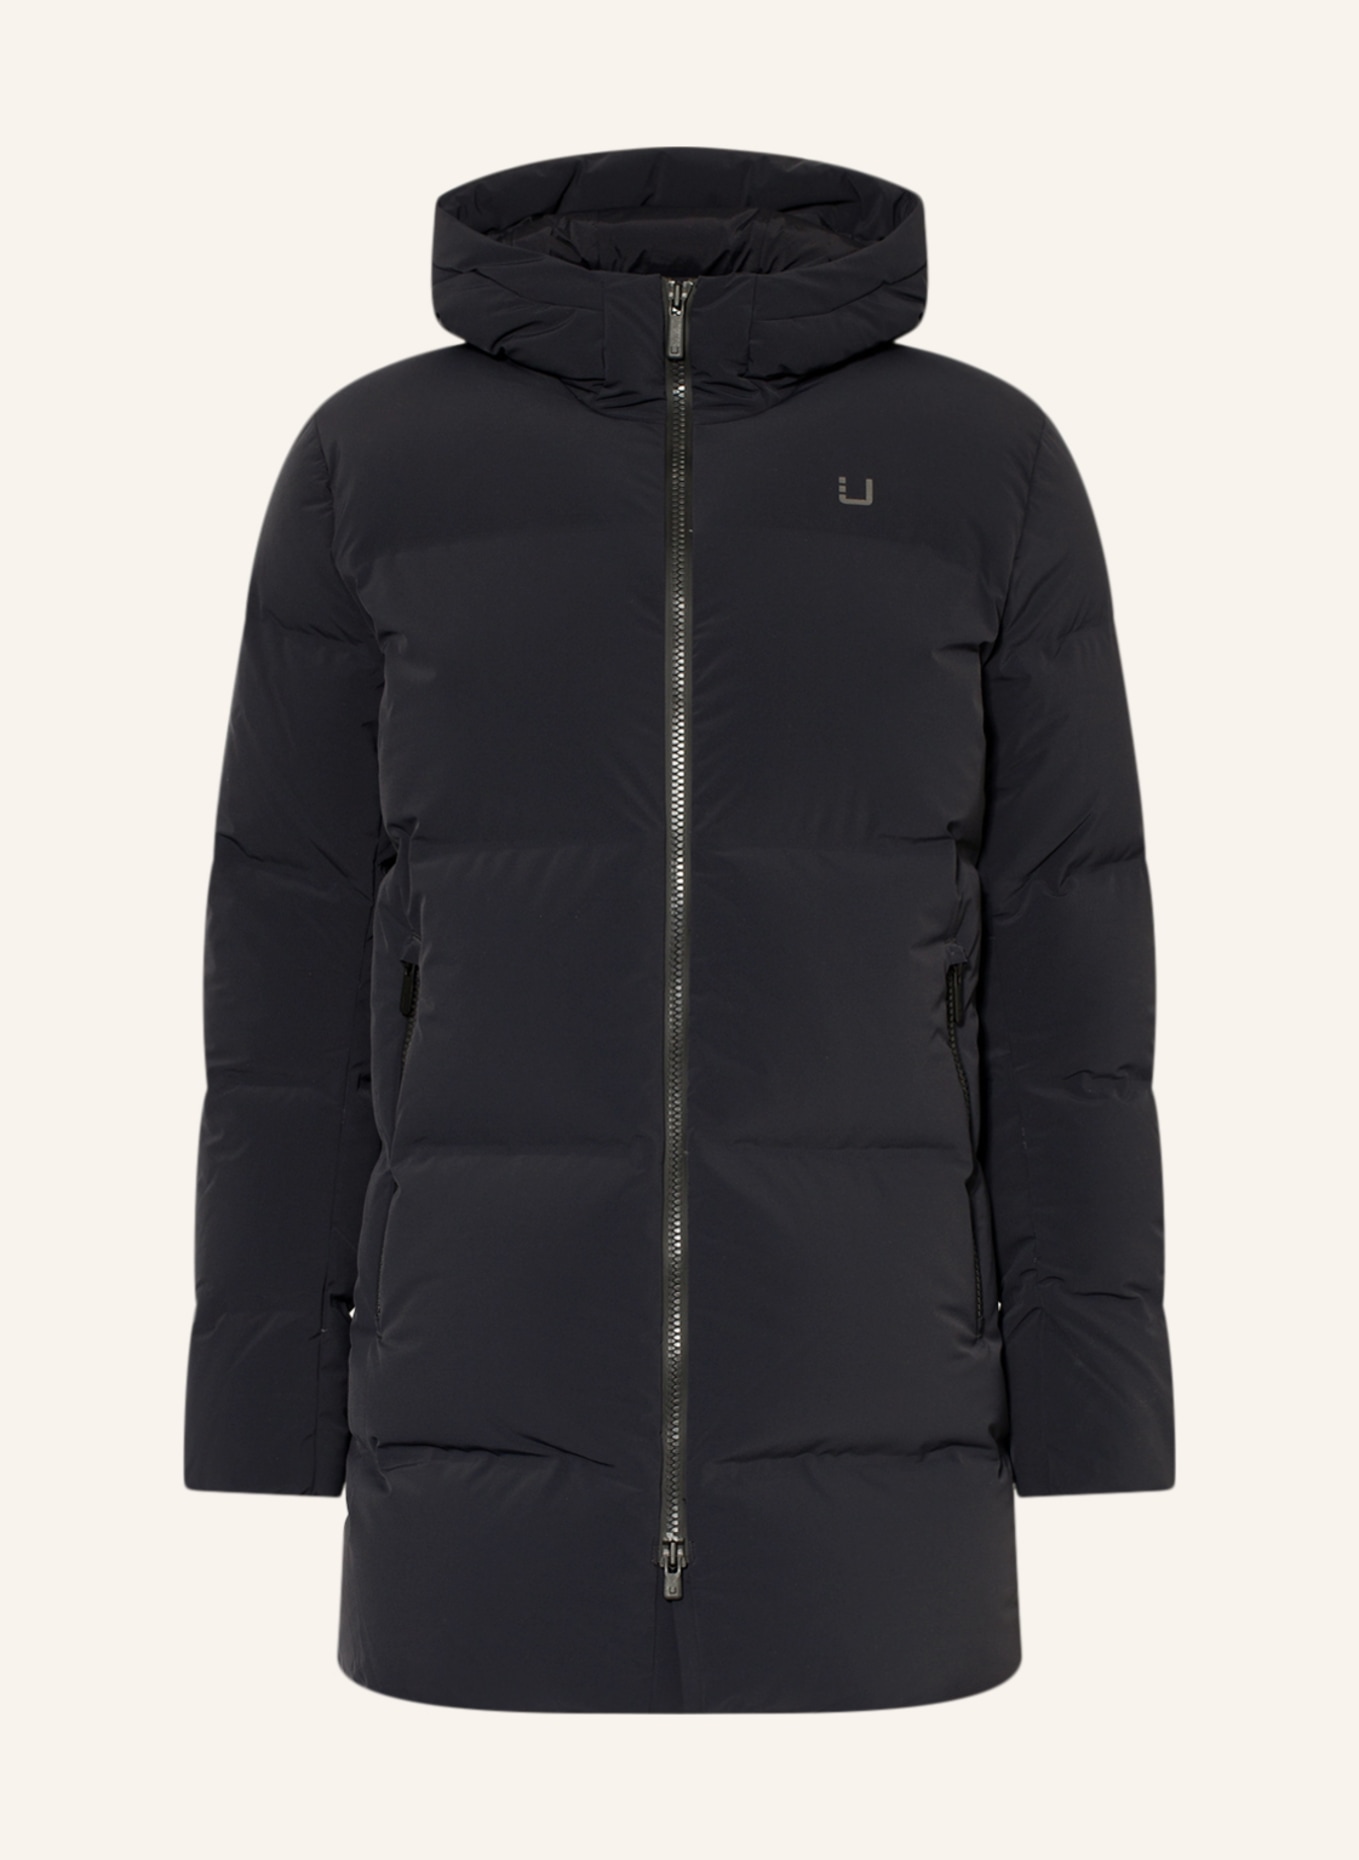 UBR Down jacket, Color: BLACK (Image 1)